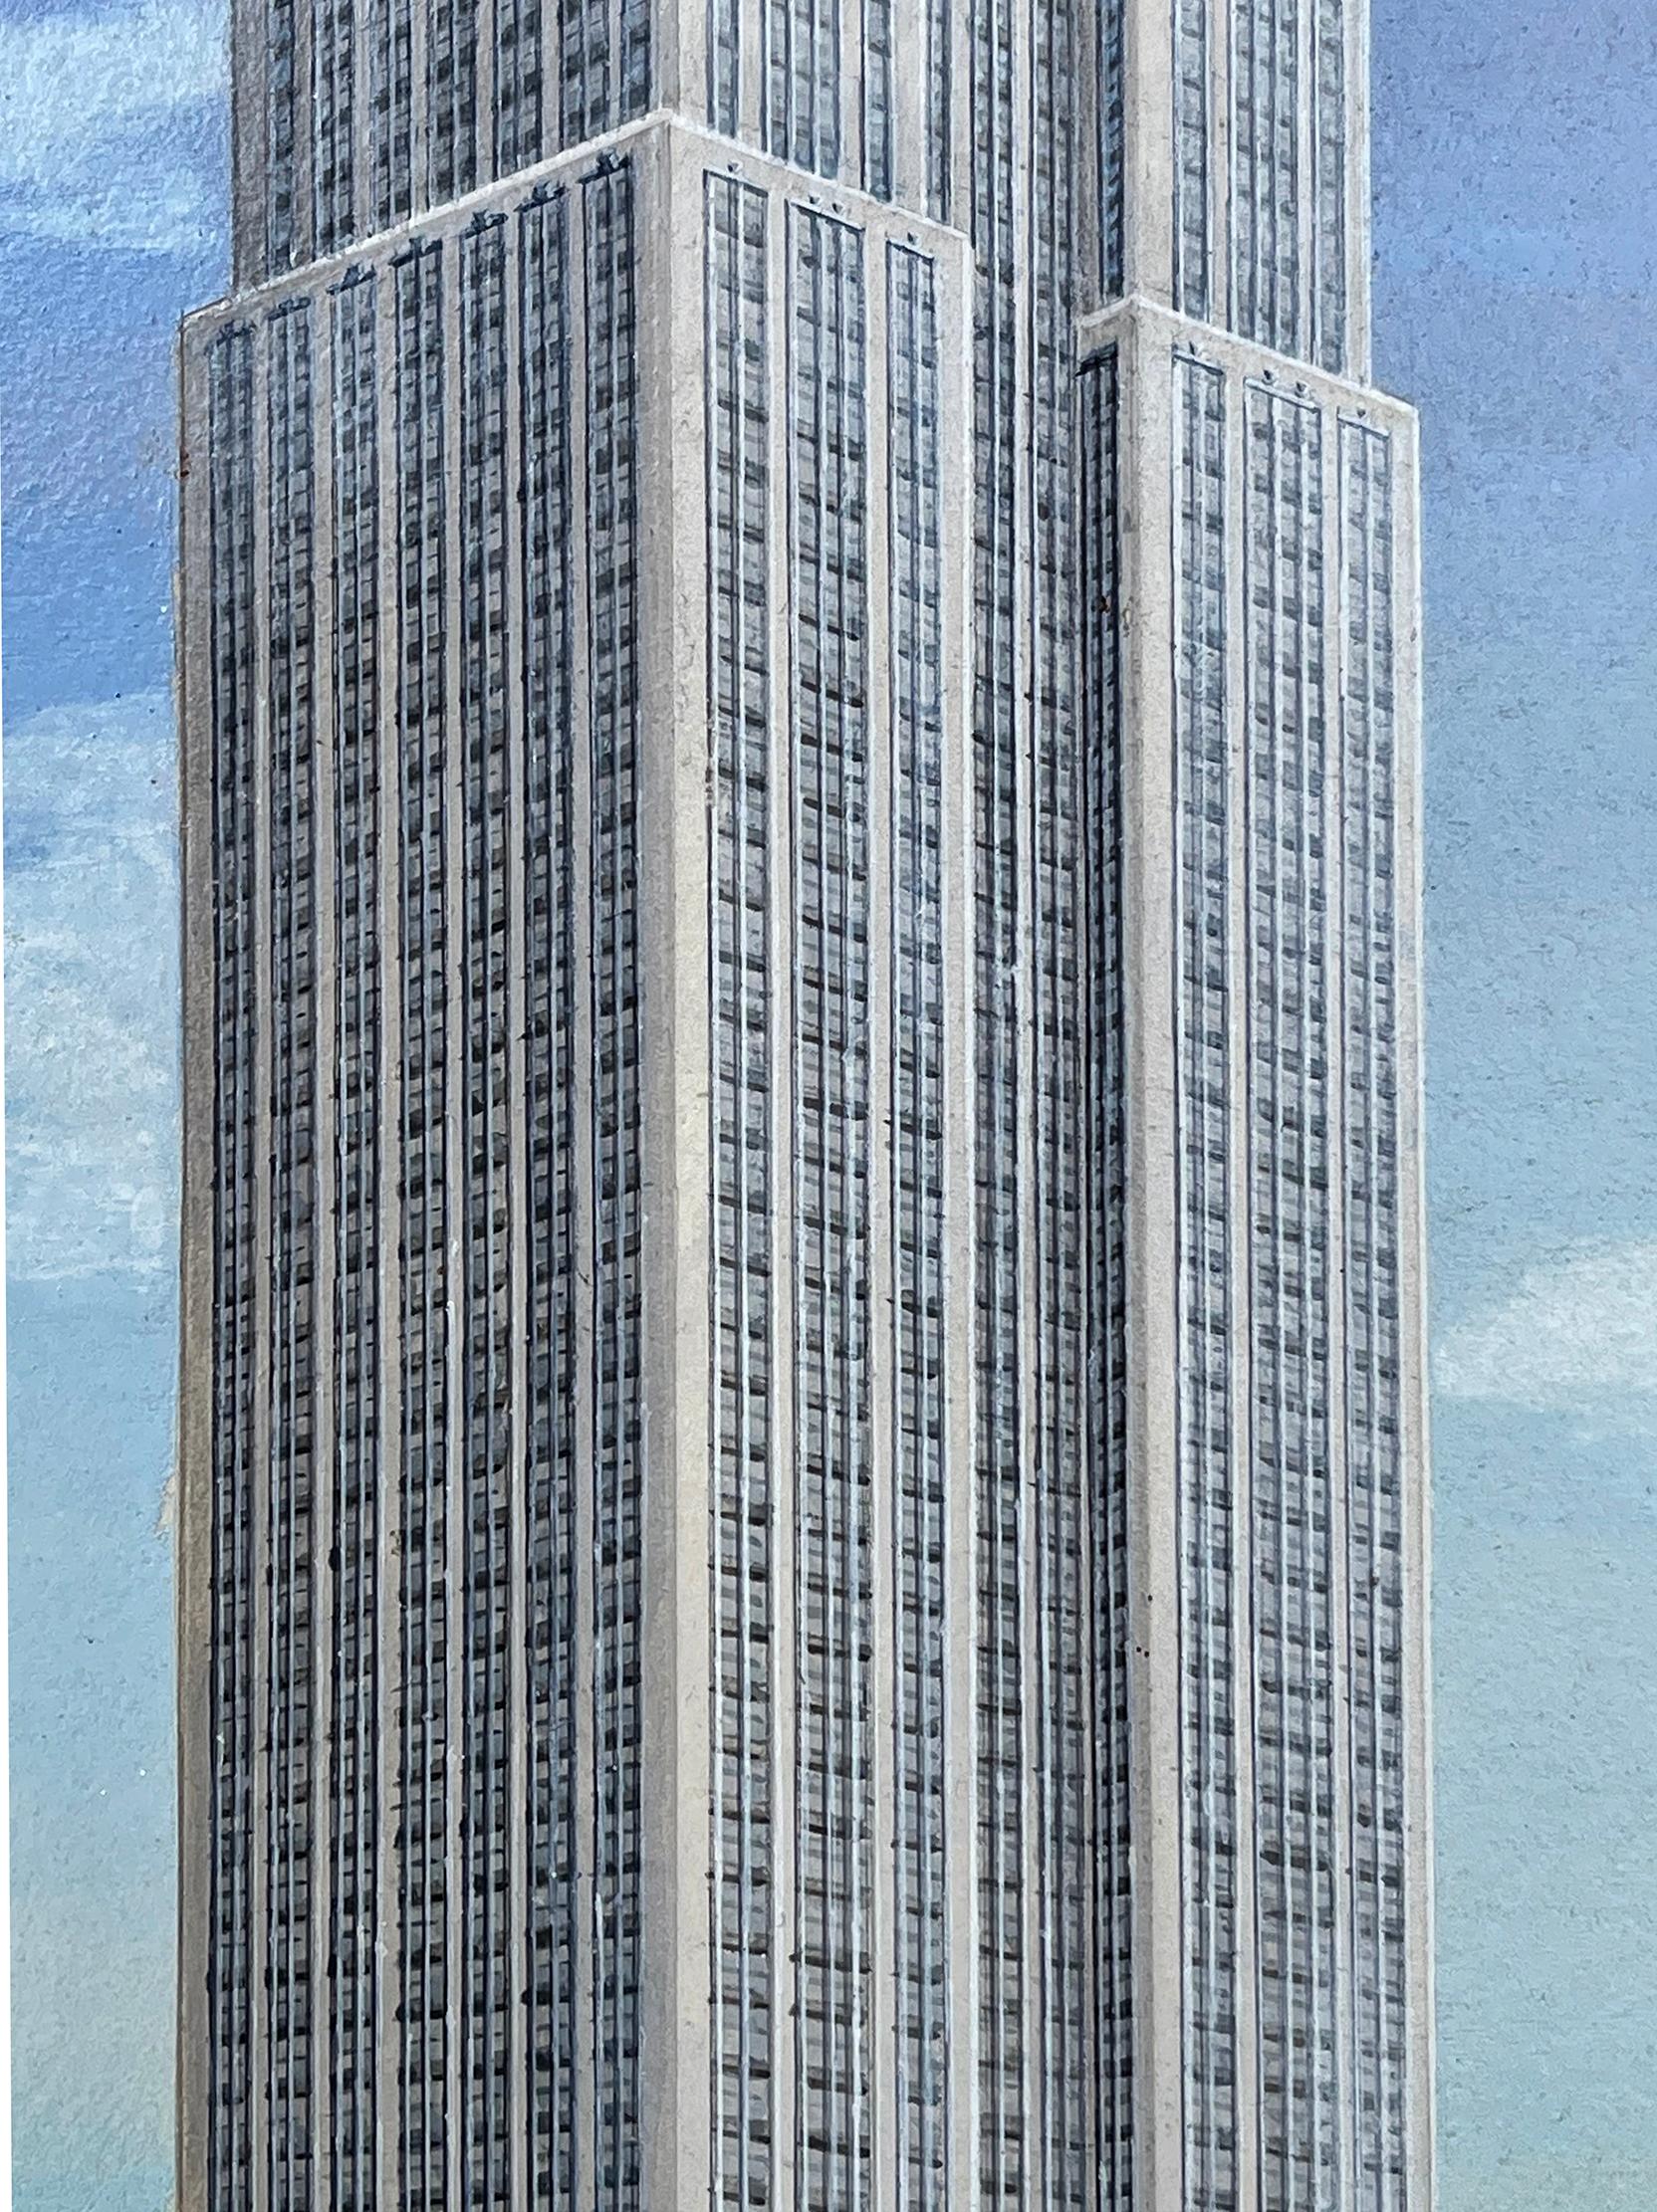 Empire State Building Künstler der Jahrhundertmitte malt alle 102 Stockwerke  - Architektur  (Fotorealismus), Painting, von Alice Smith